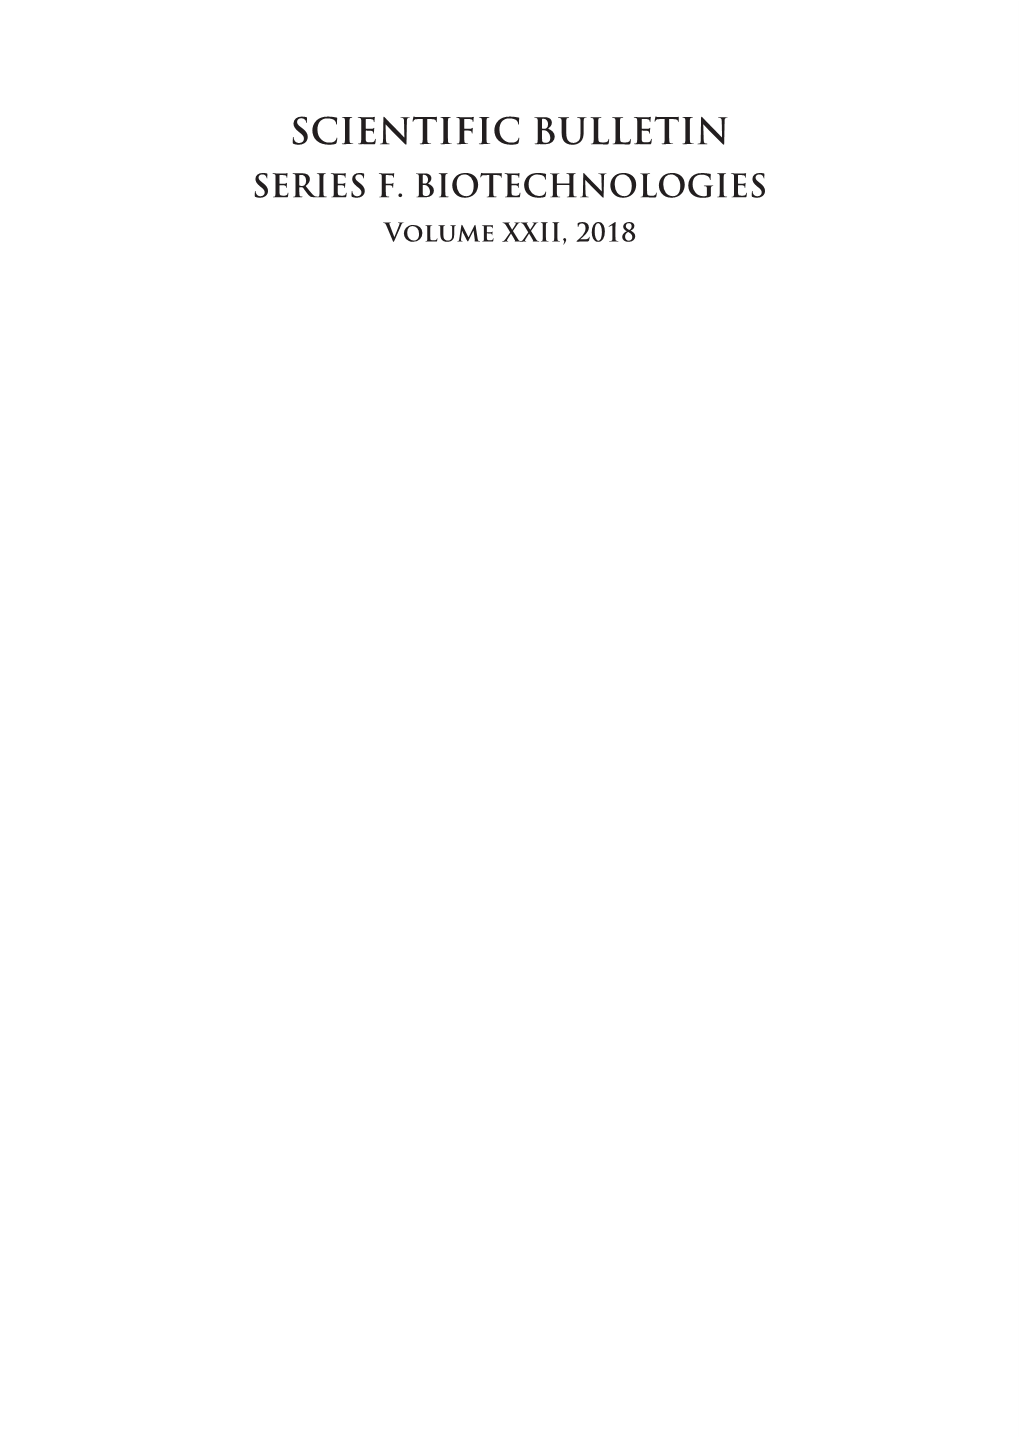 SCIENTIFIC BULLETIN SERIES F. BIOTECHNOLOGIES Volume XXII, 2018